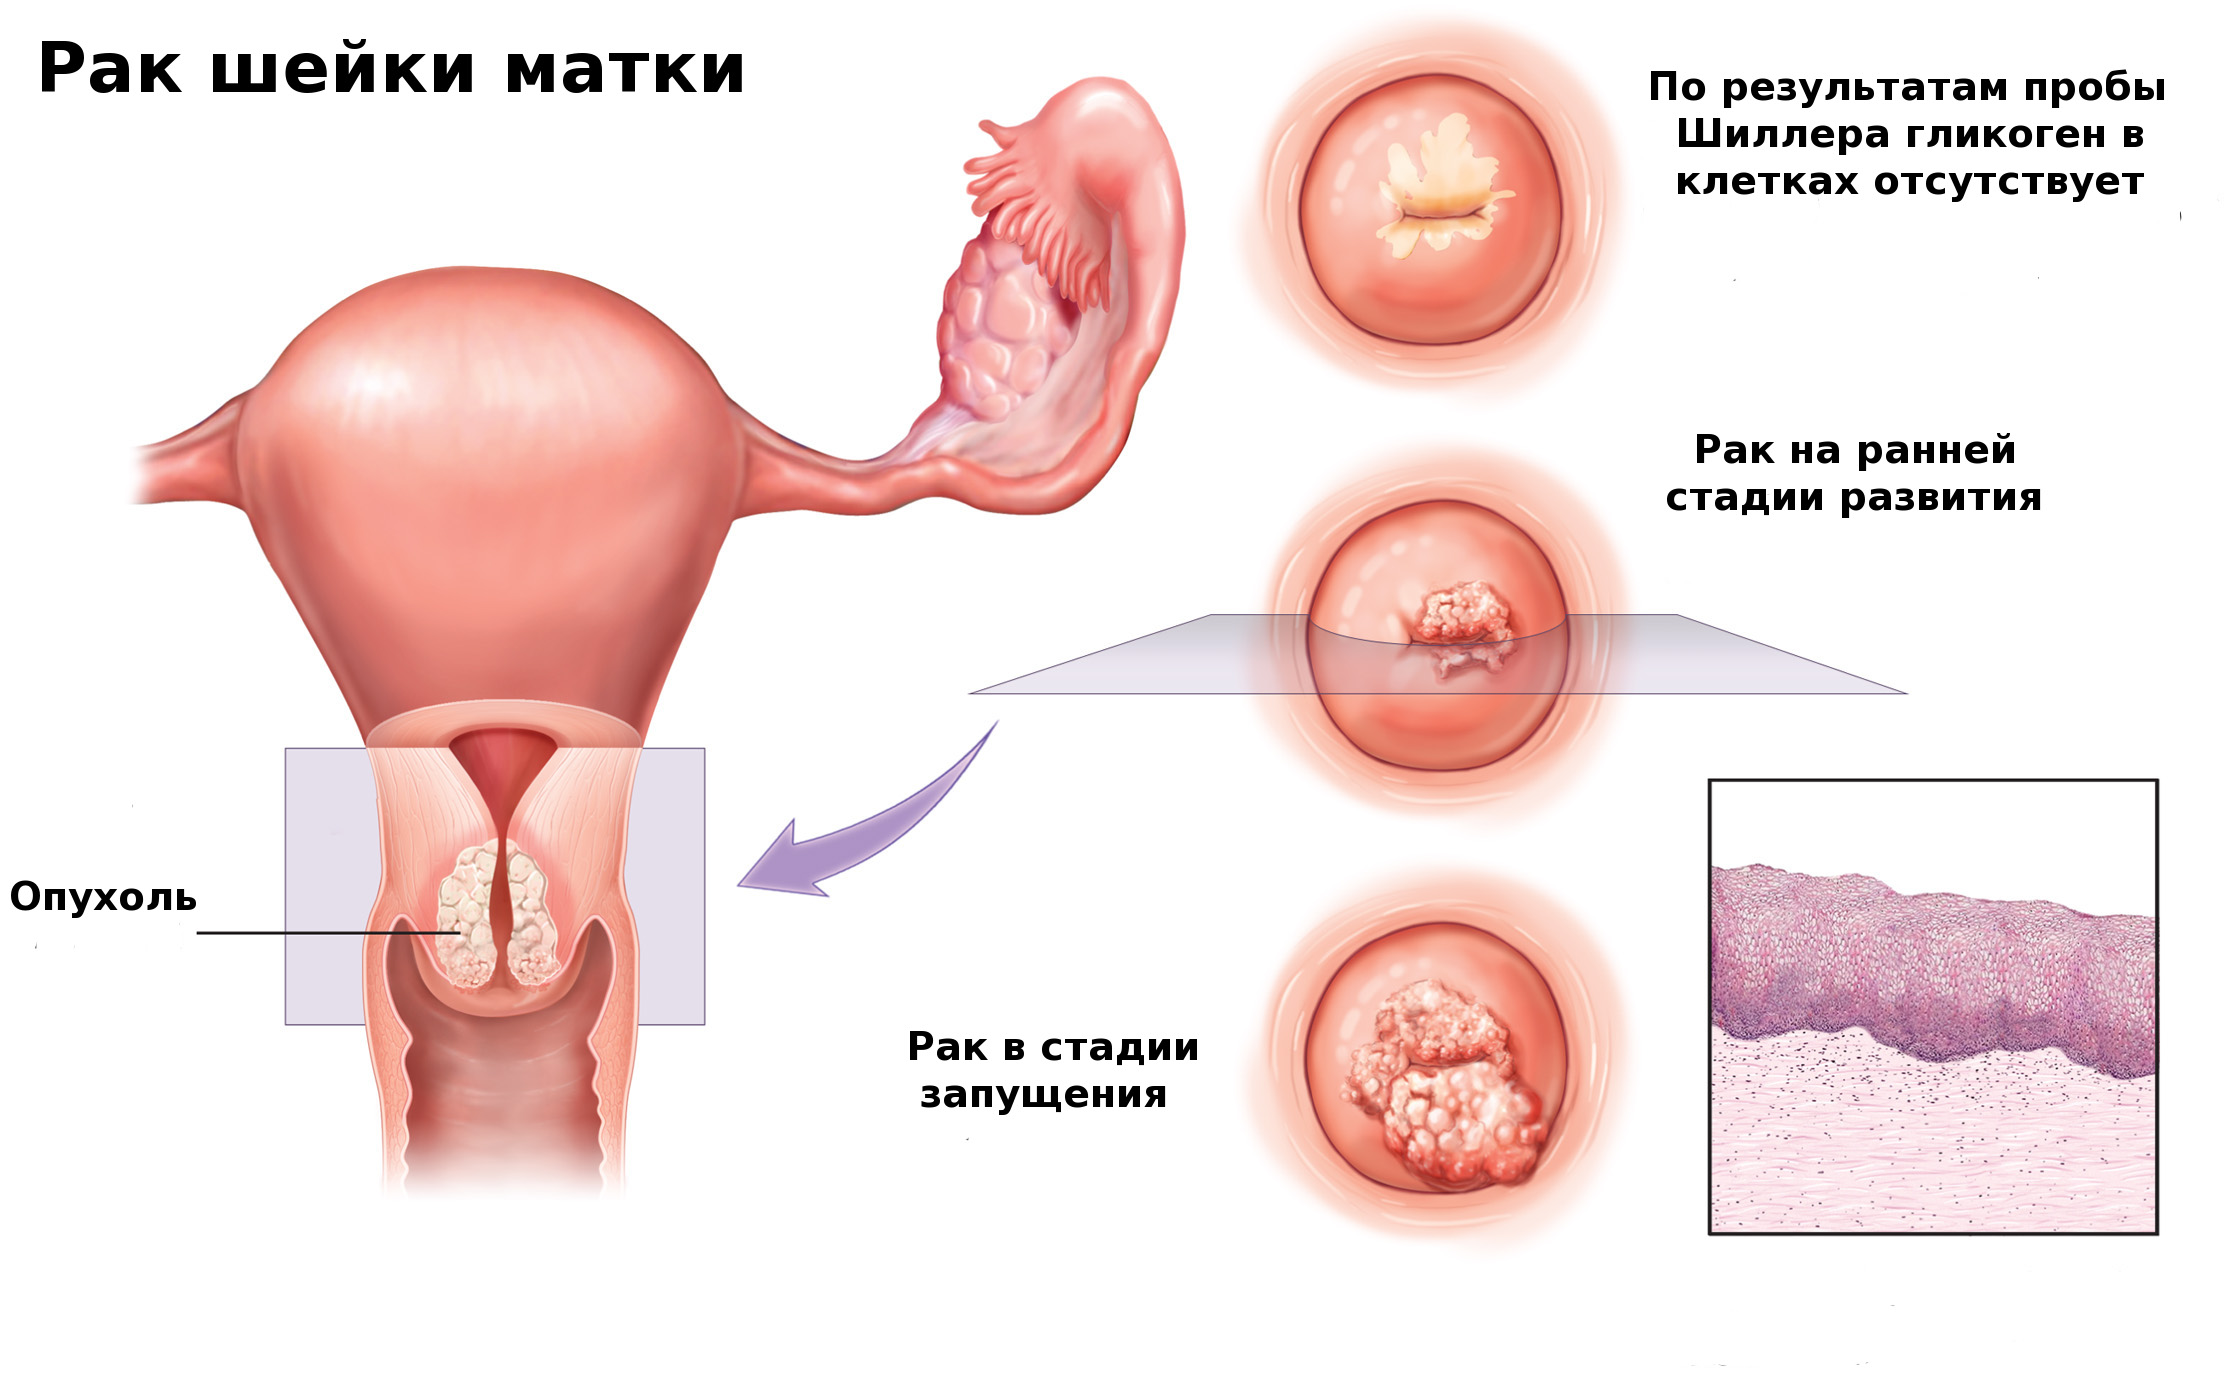 Основные симптомы рака матки